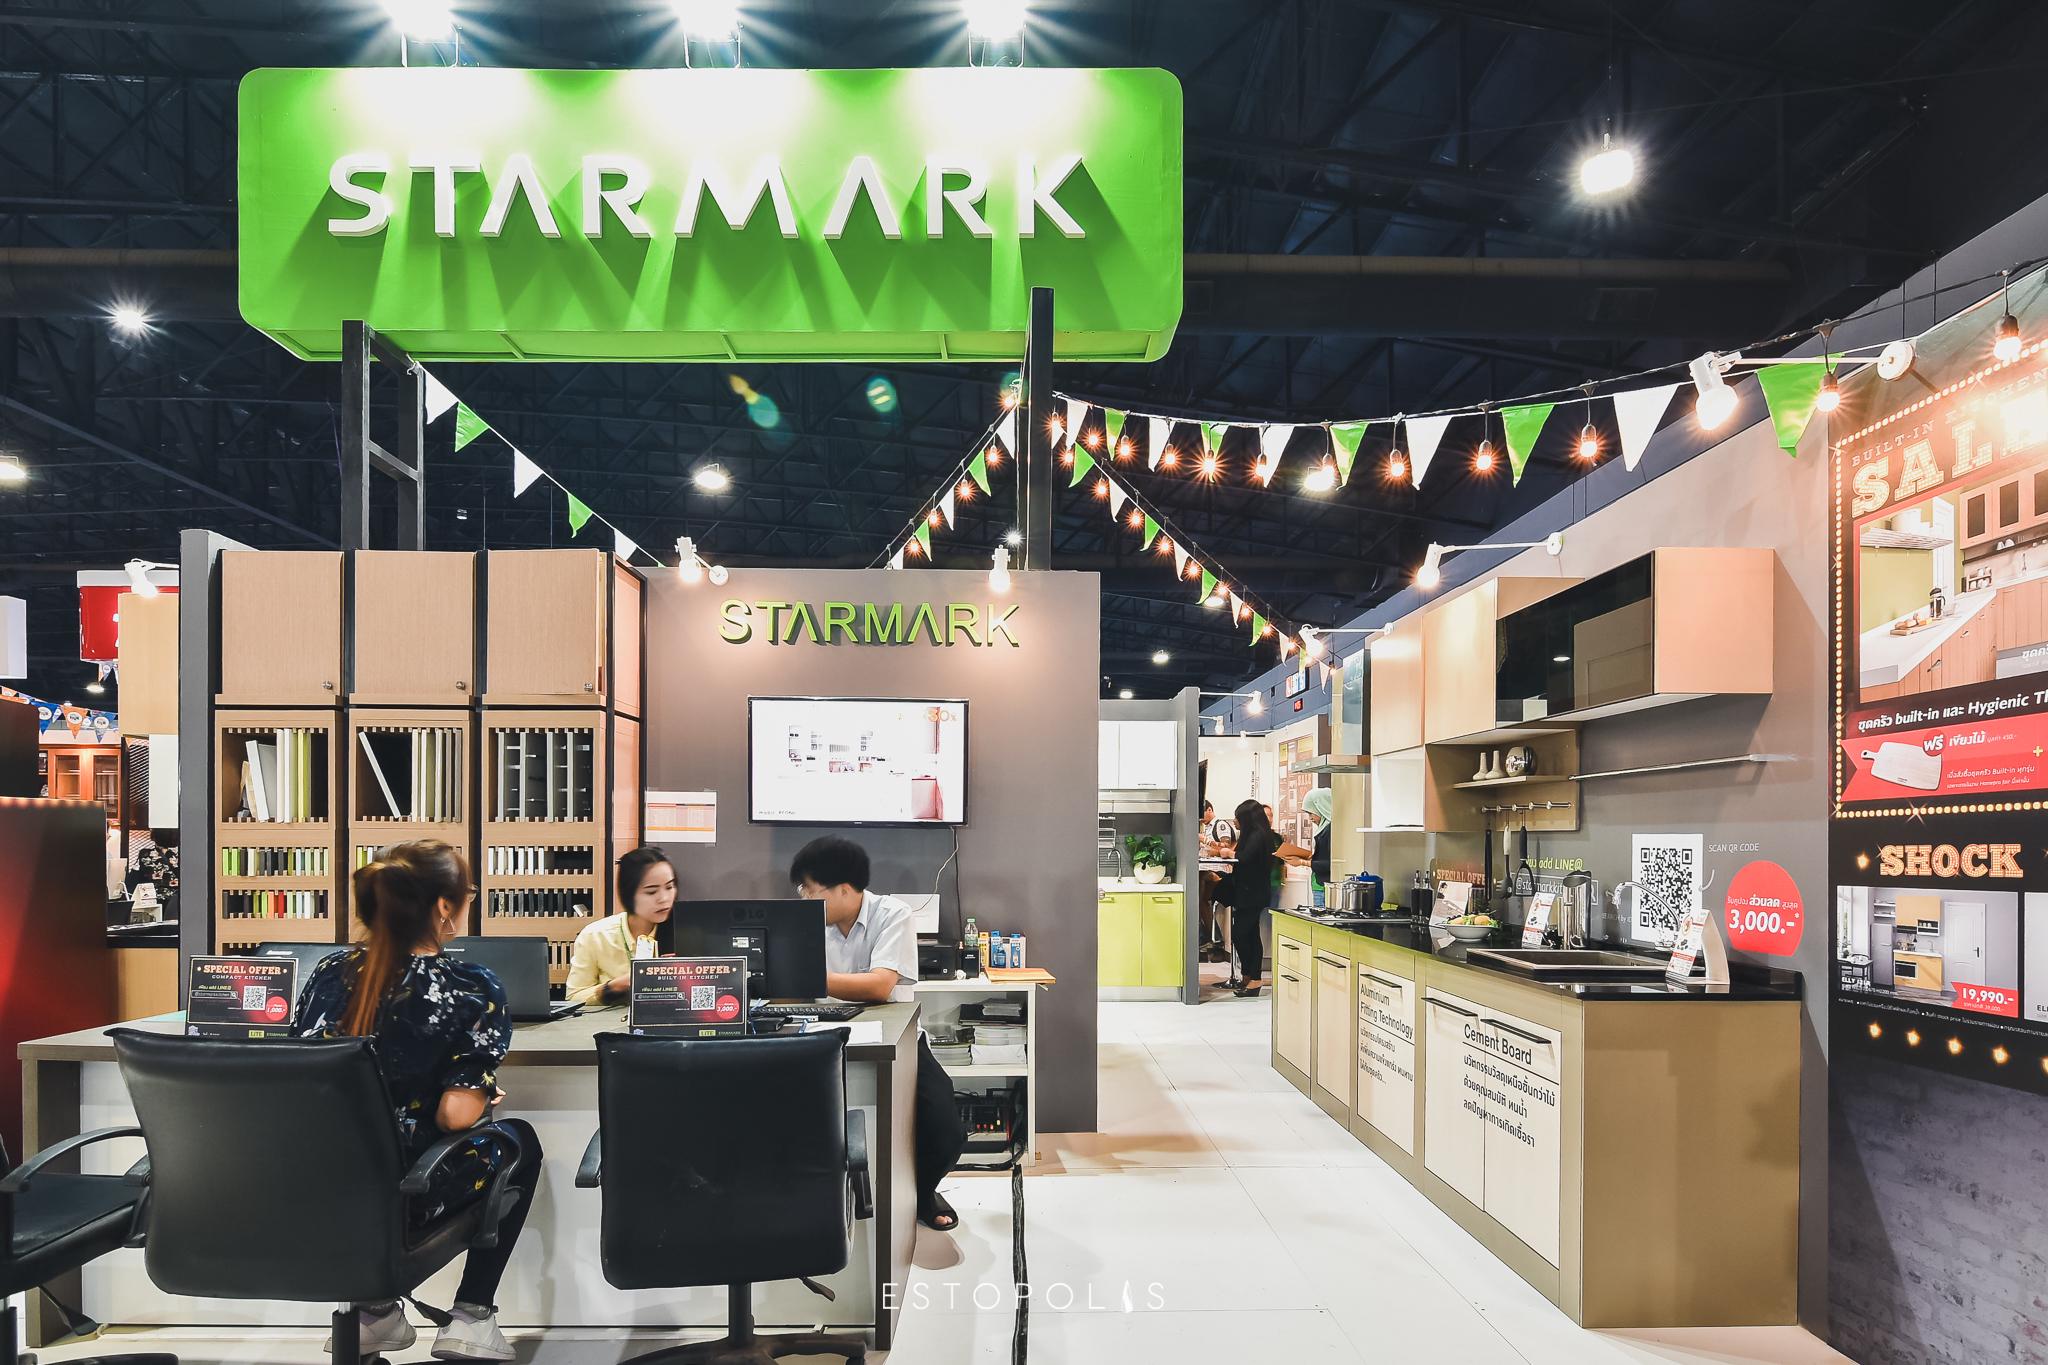 ไอเดียห้องครัว STARMARK - สตาร์มาร์ค @ HomePro Fair 2018 (โฮมโปร แฟร์ 2561)